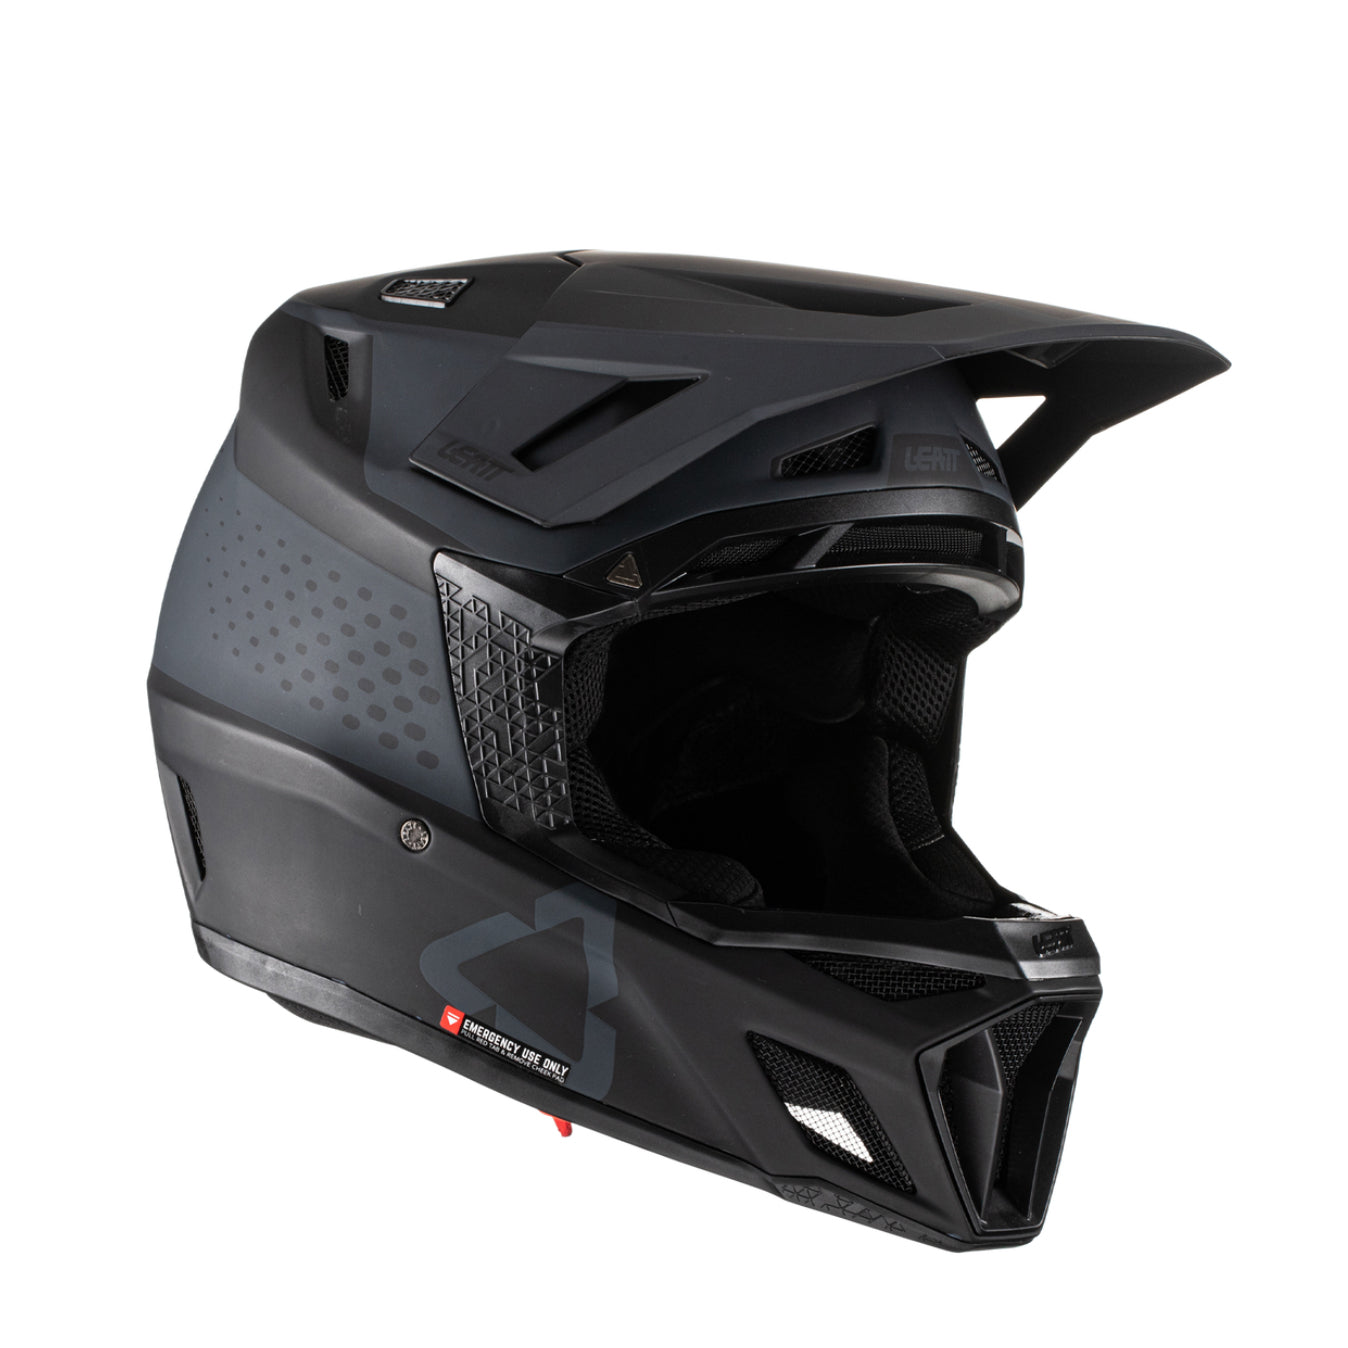 Leatt MTB 8.0 Full Face Helmet Large (59-60cm) Black